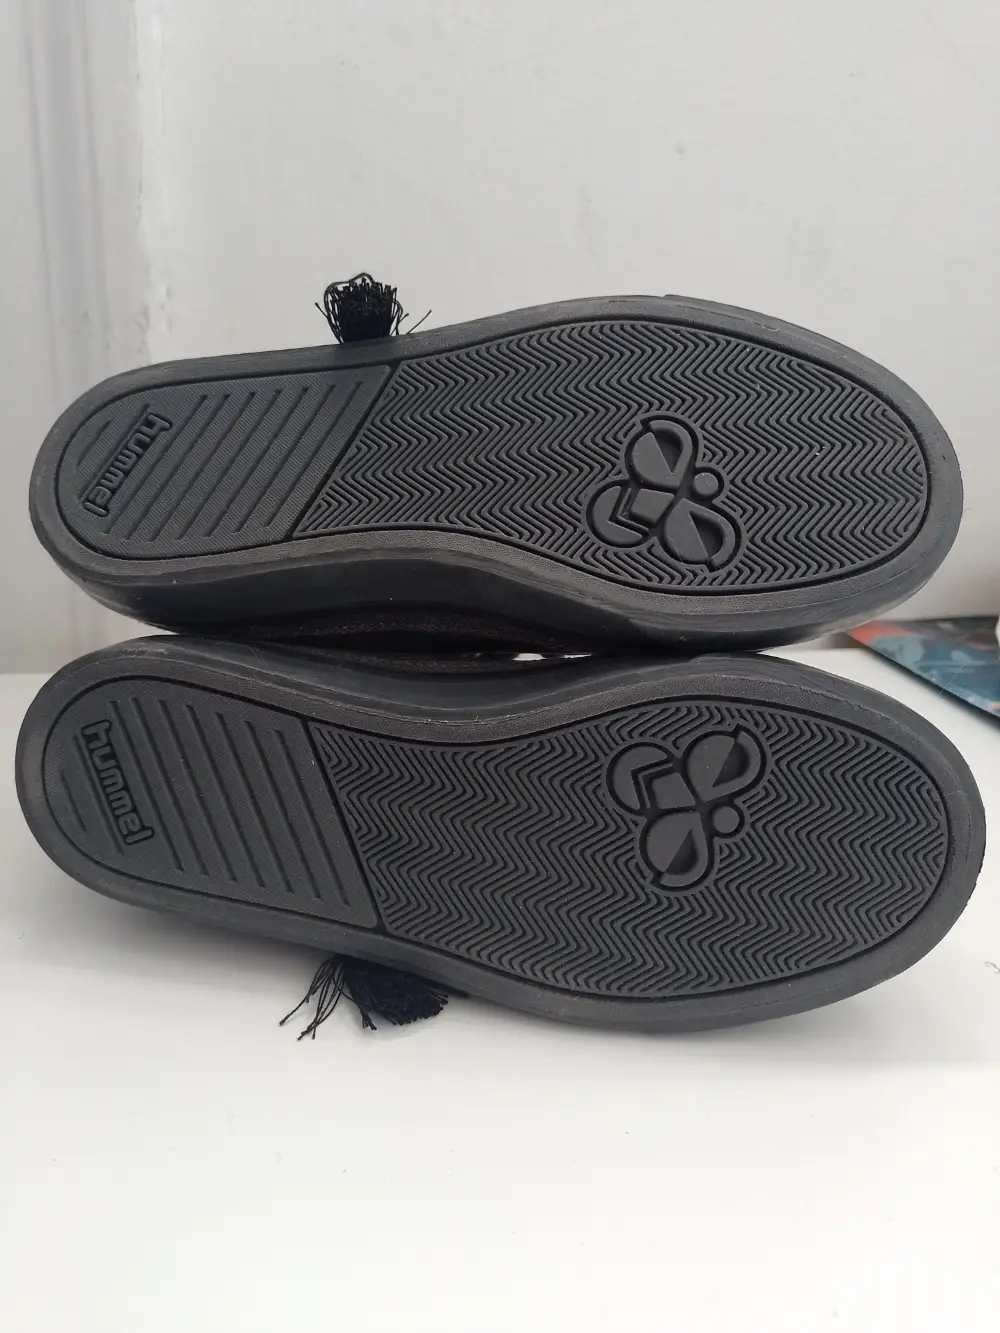 Køb Hummel støvler i størrelse 30 af Sus på Reshopper · Shop secondhand til børn, mor og bolig